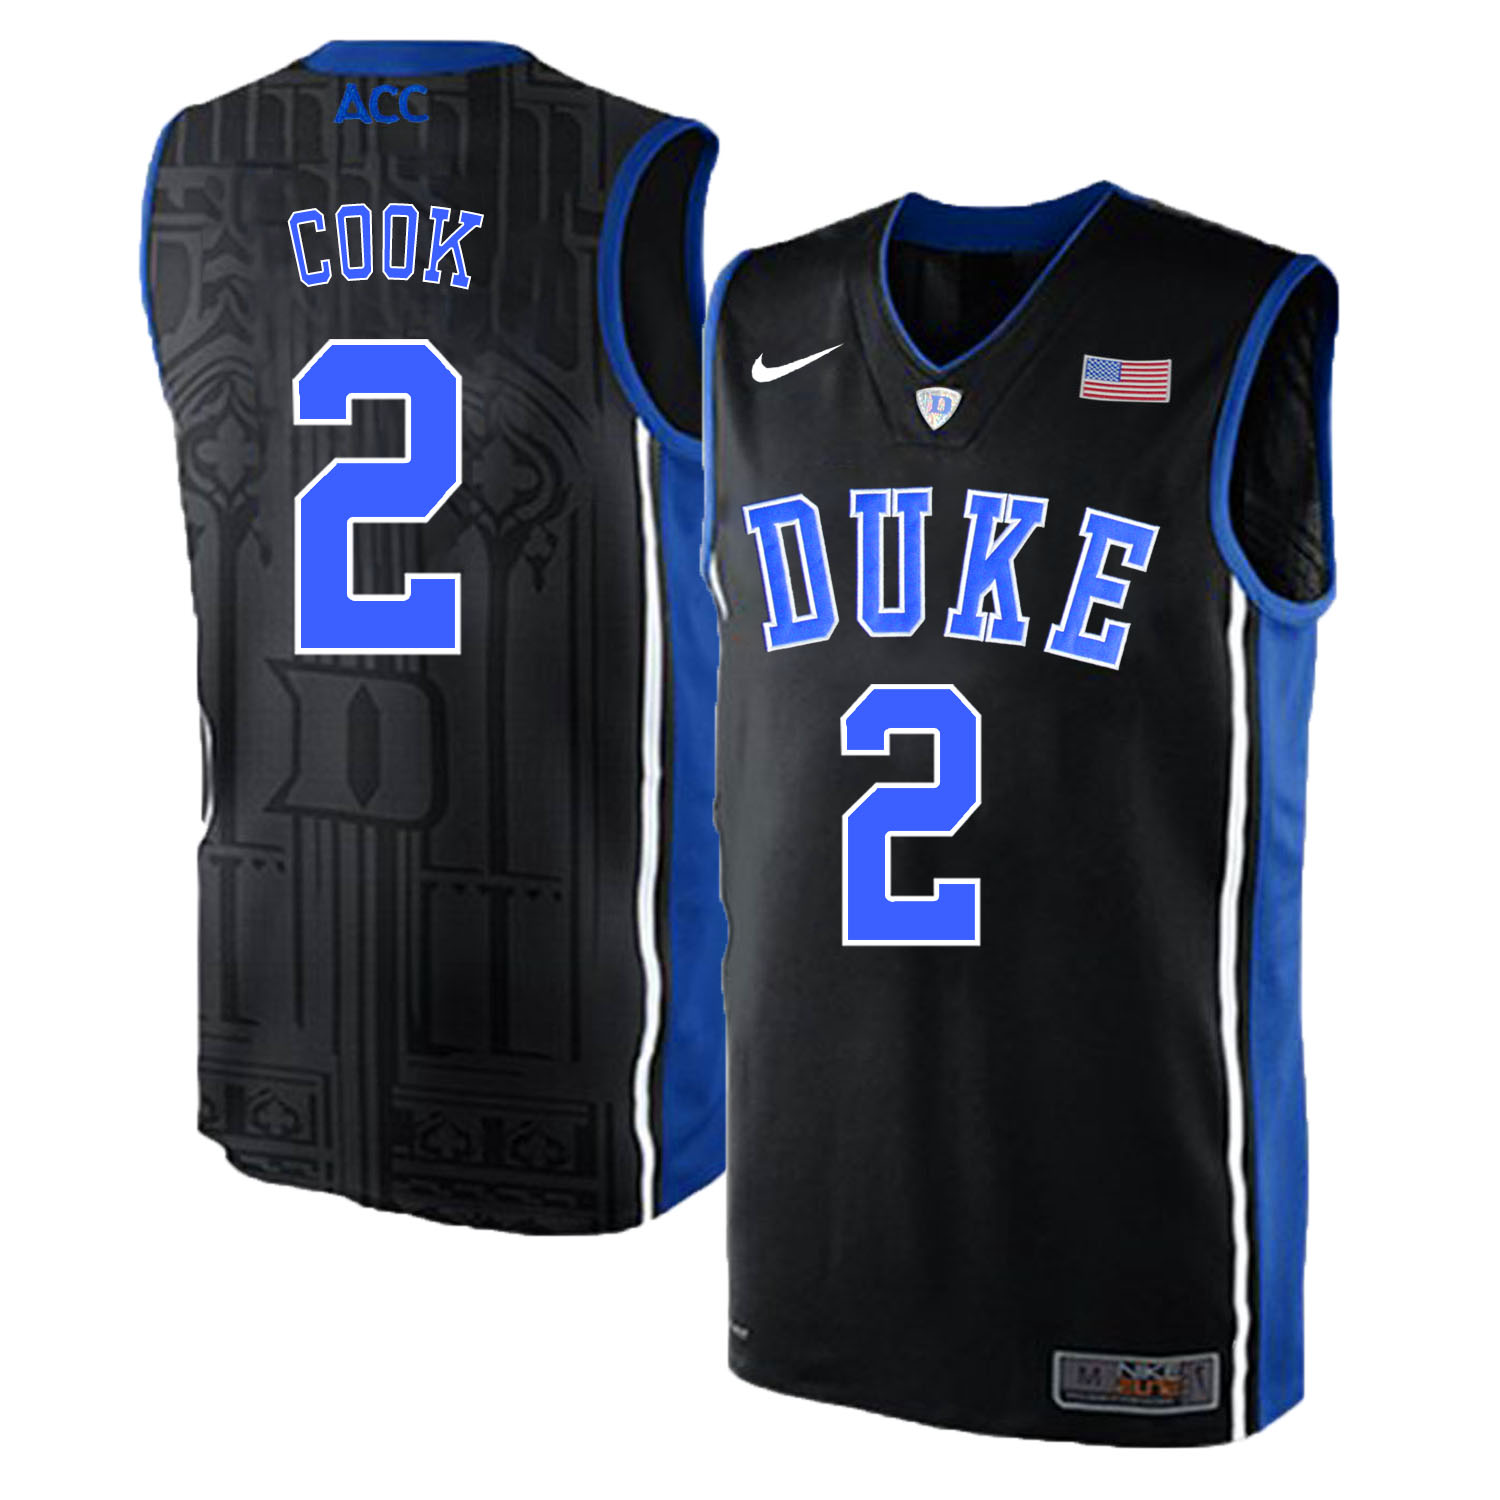 Duke Blue Devils 2 Quinn Cook Black Elite Nike College Basketball Jersey